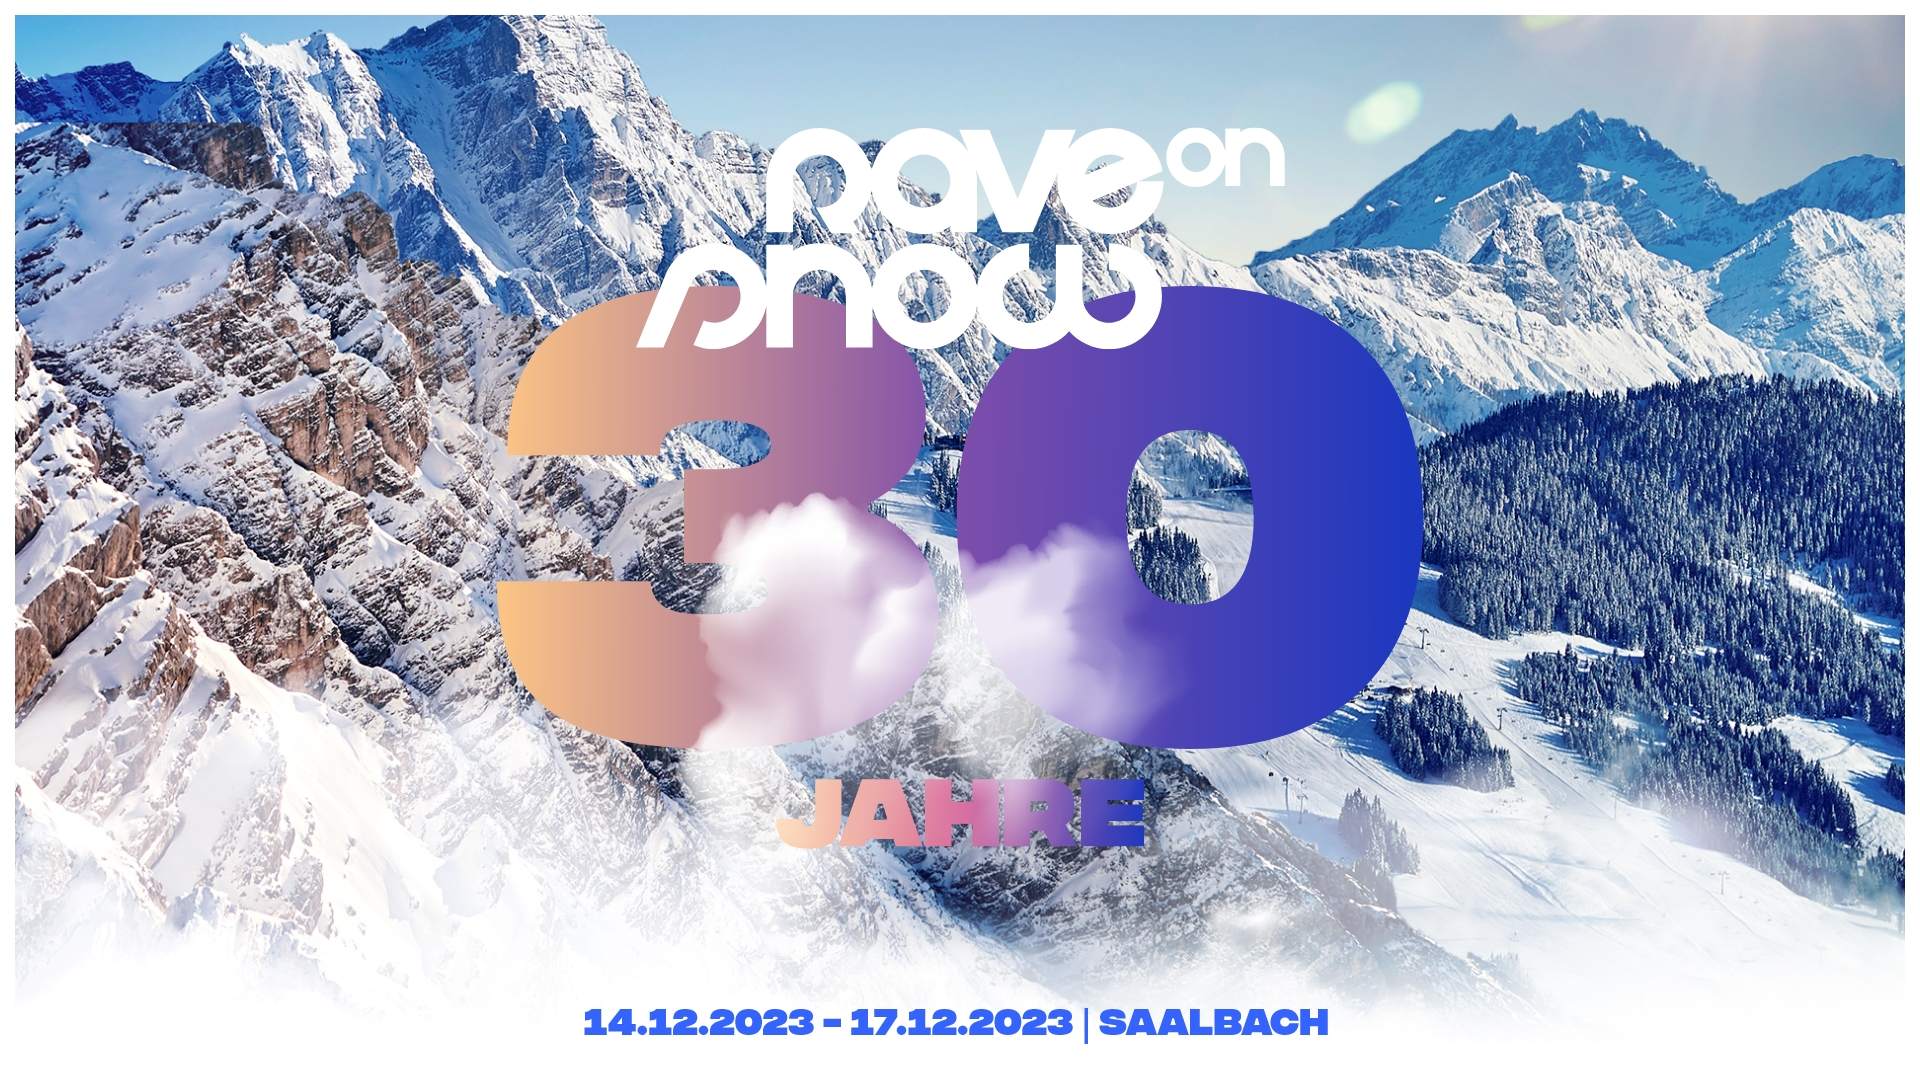 Rave On Snow 2023 - フライヤー表